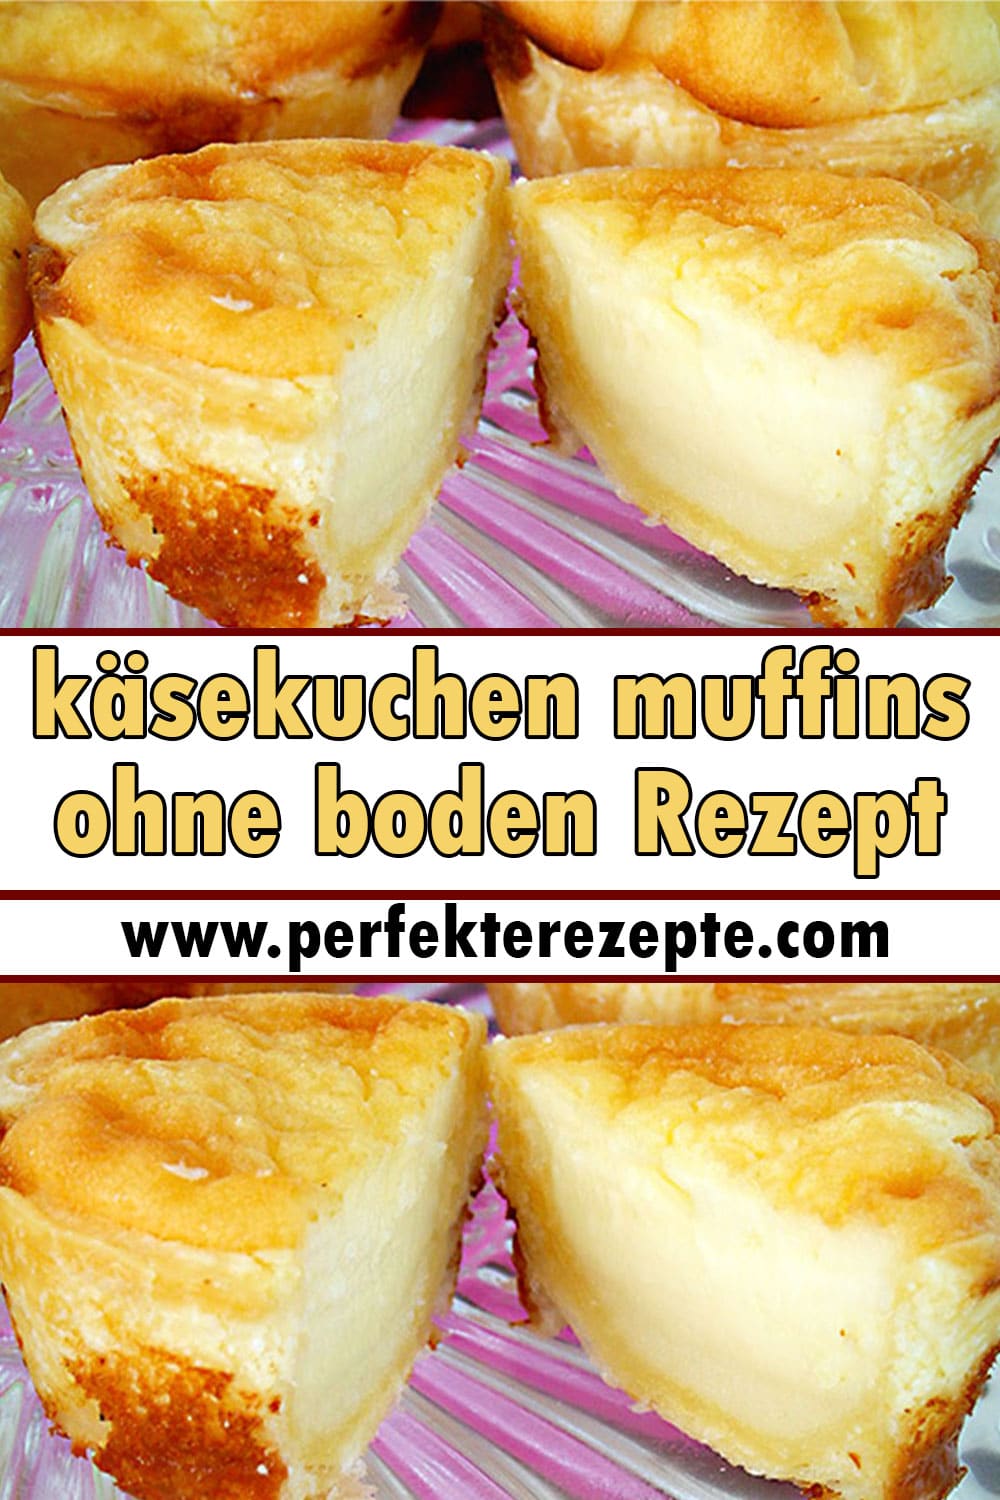 käsekuchen muffins ohne boden Rezept